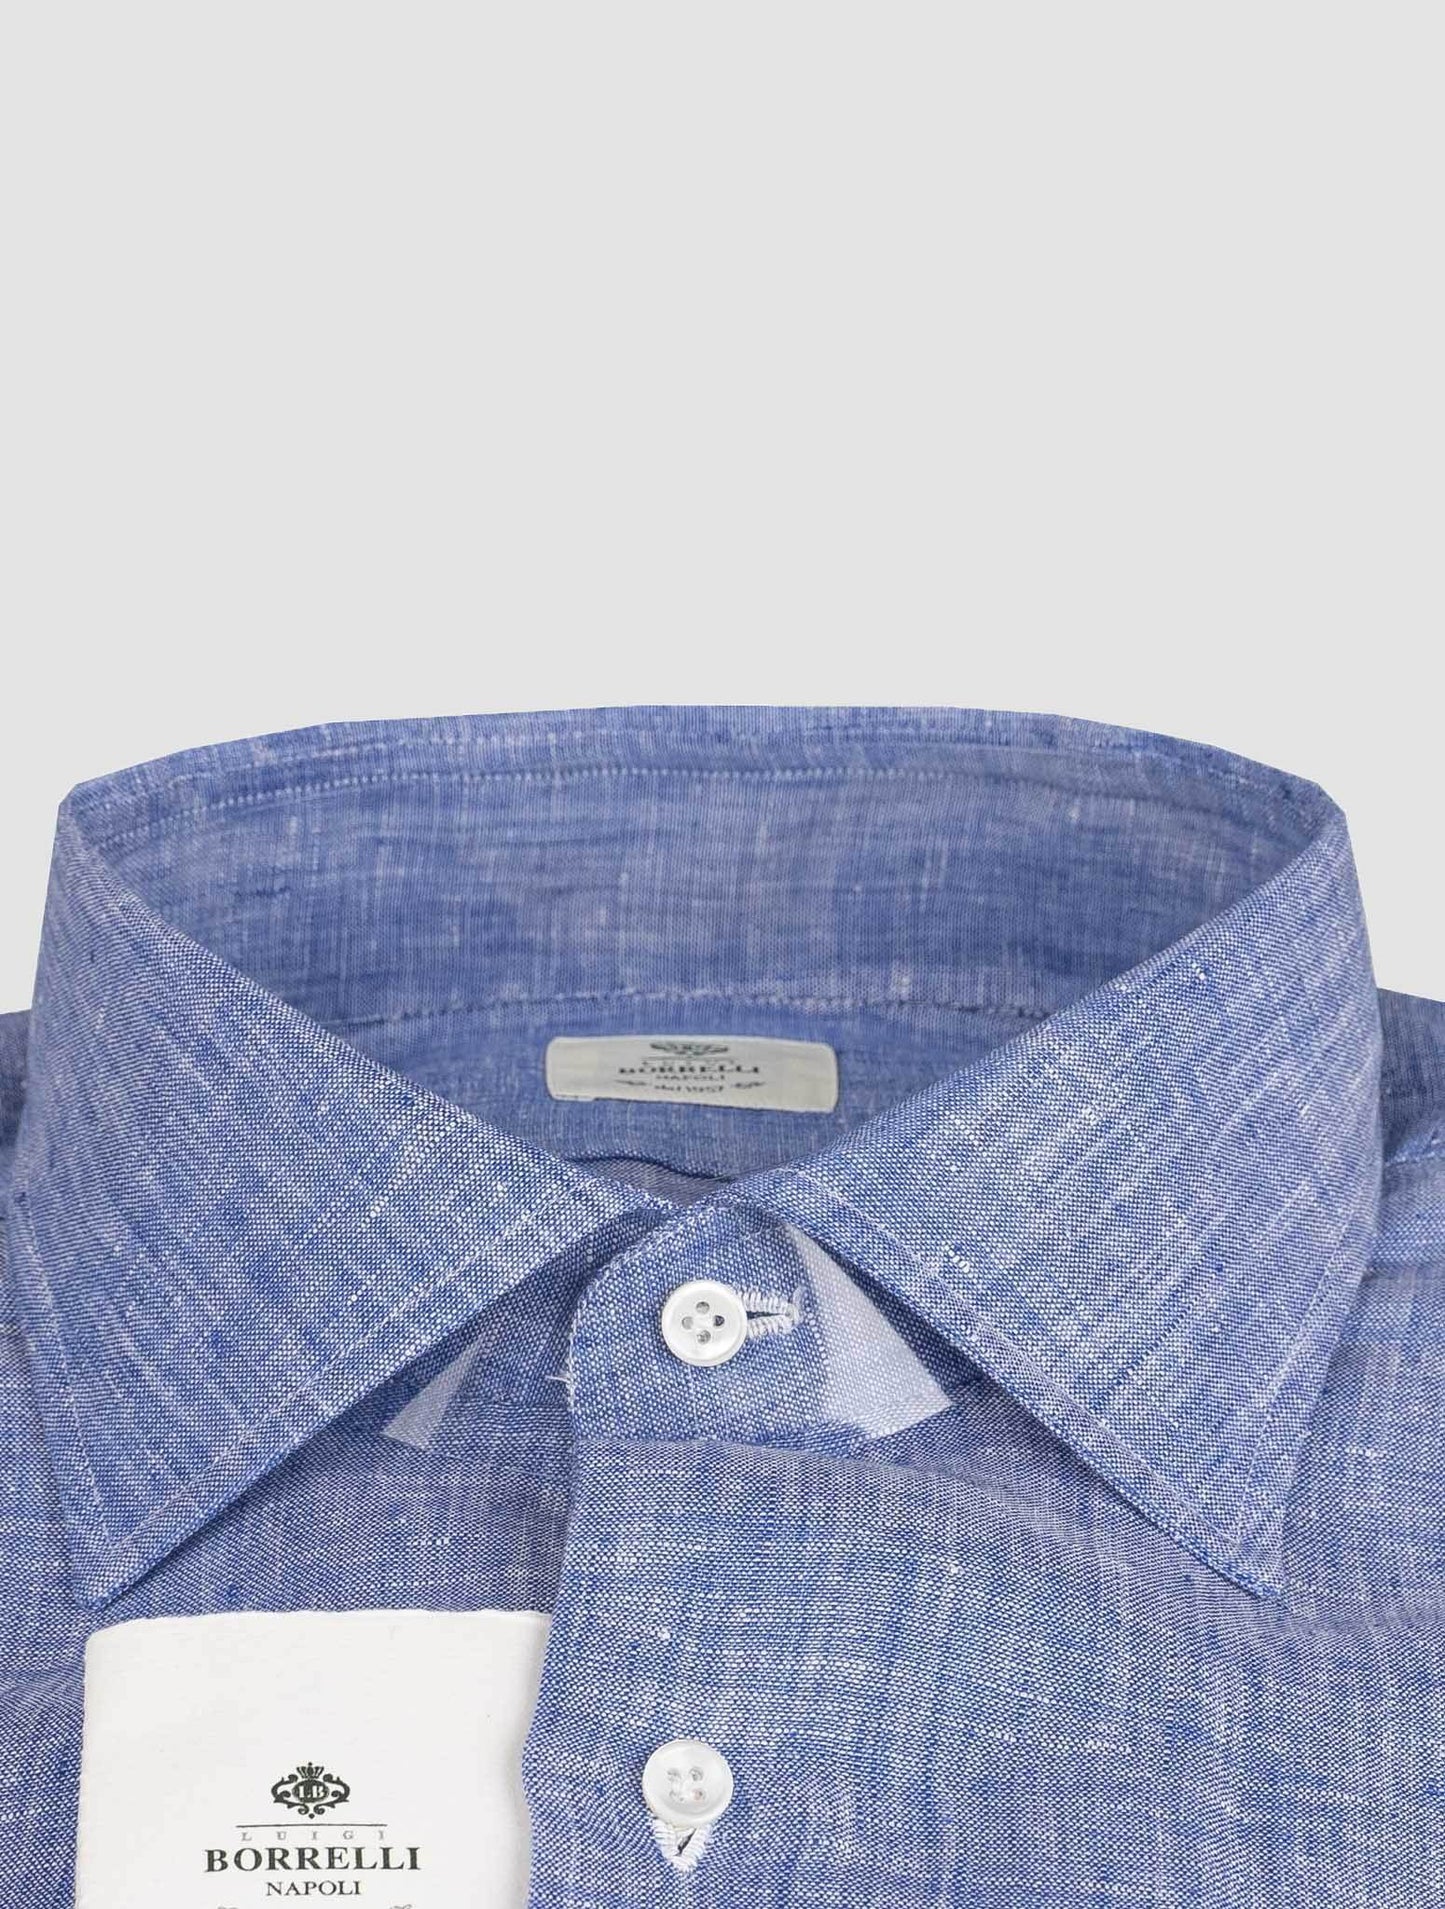 Luigi borrelli šviesiai mėlynas lininis marškiniai